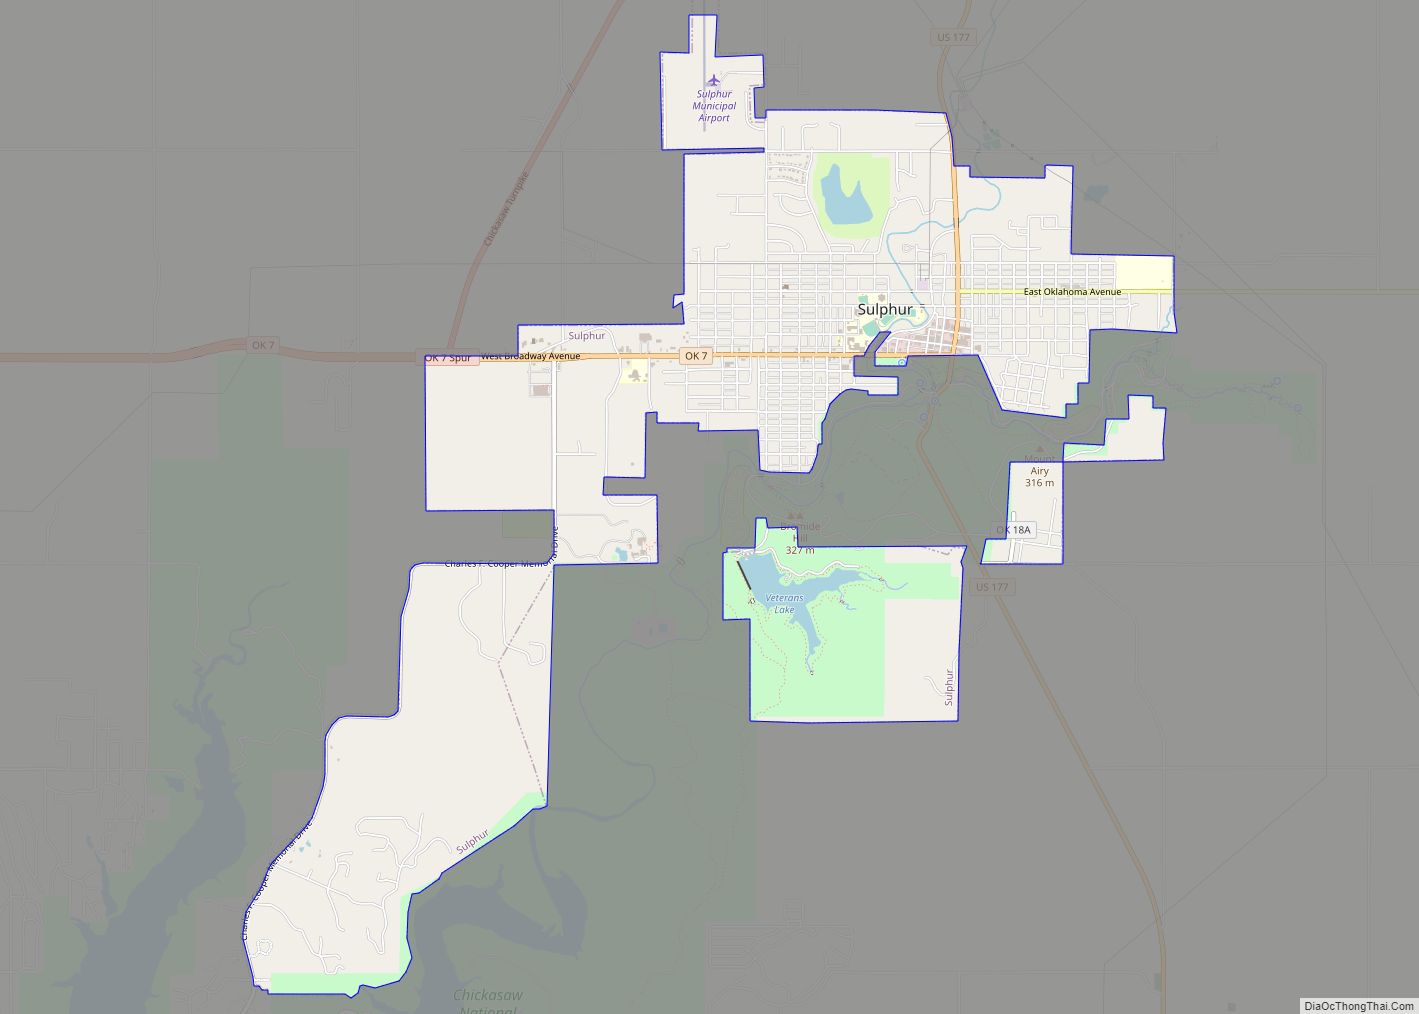 Map of Sulphur city, Oklahoma